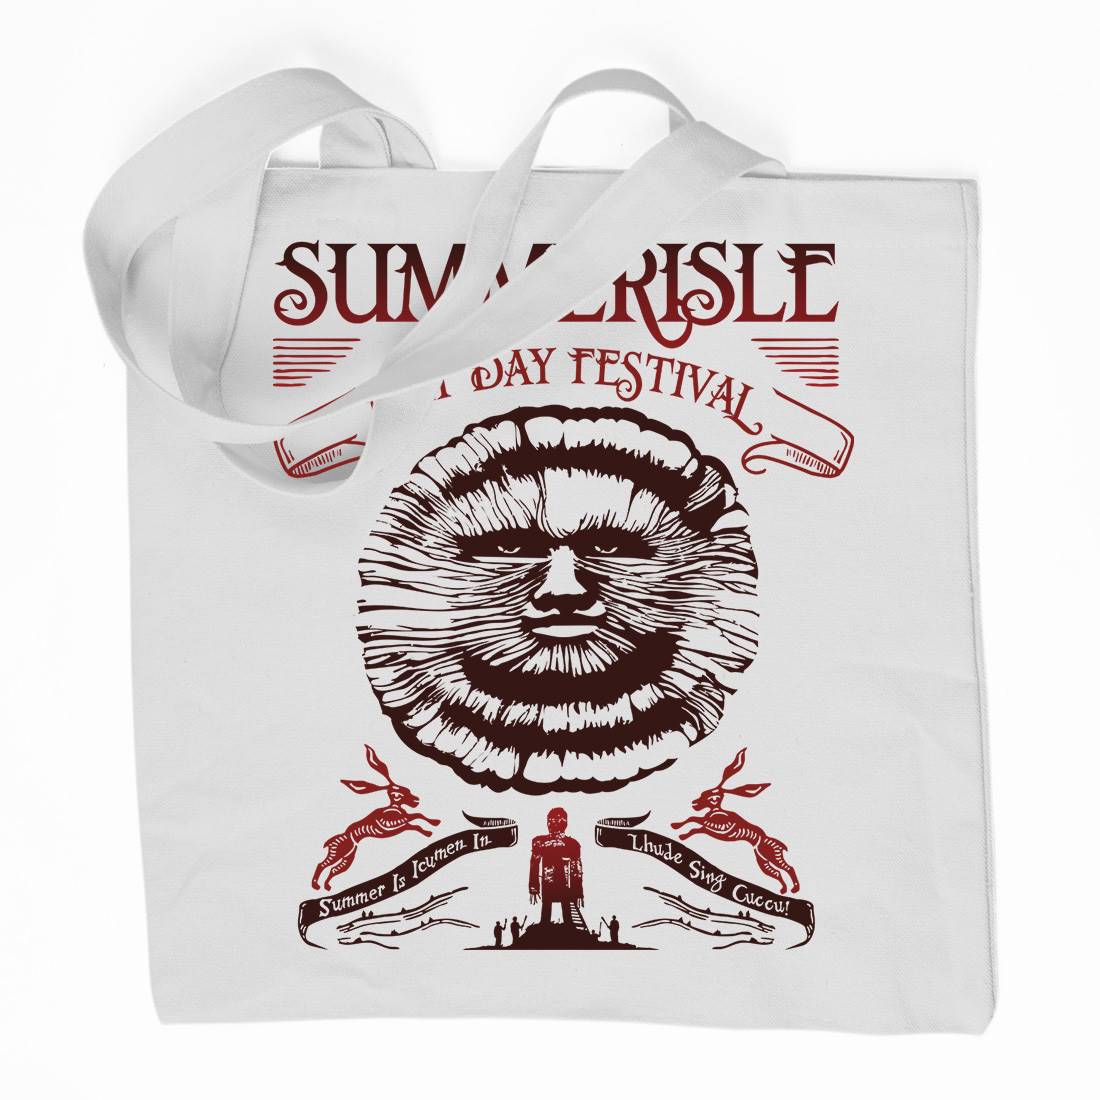 Summerisle Festival Organic Premium Cotton Tote Bag Horror D236